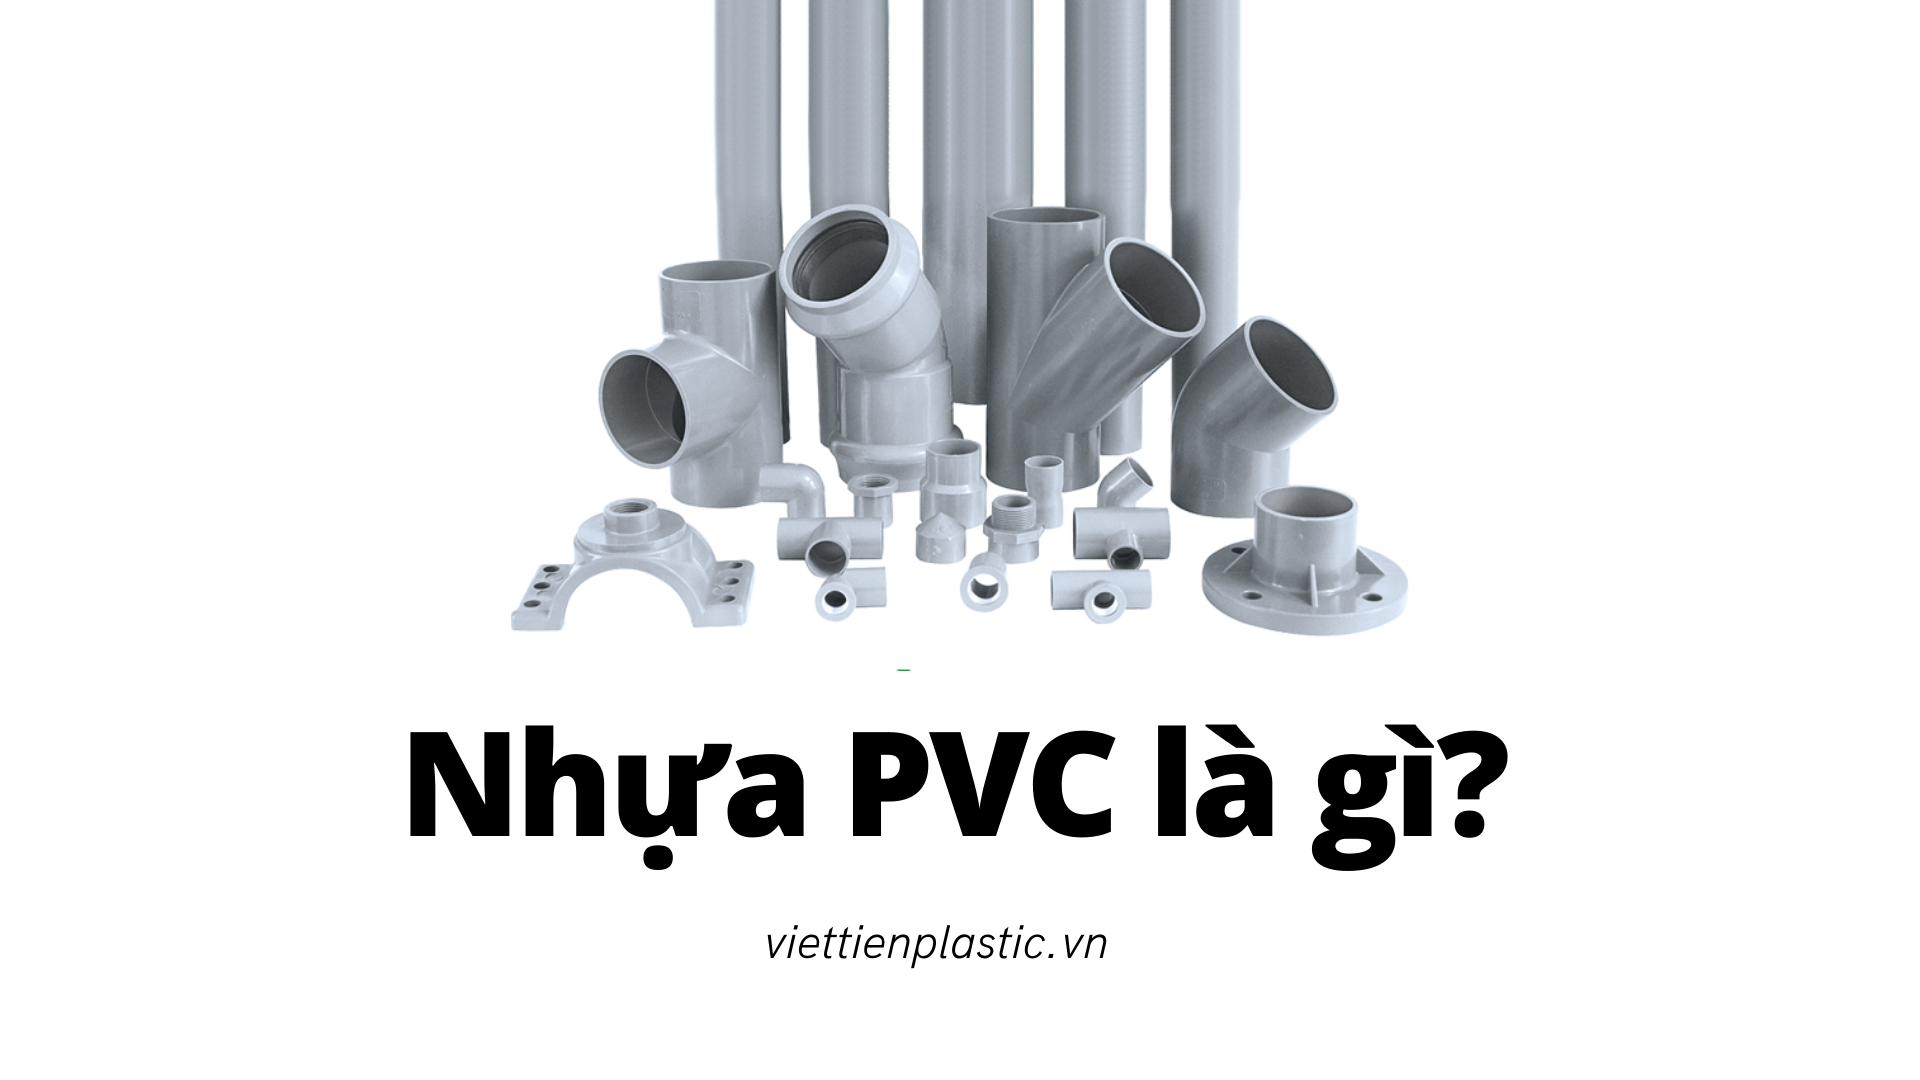 Nhựa PVC là gì? Ứng dụng và tính chất phổ biến của nhựa PVC là gì?